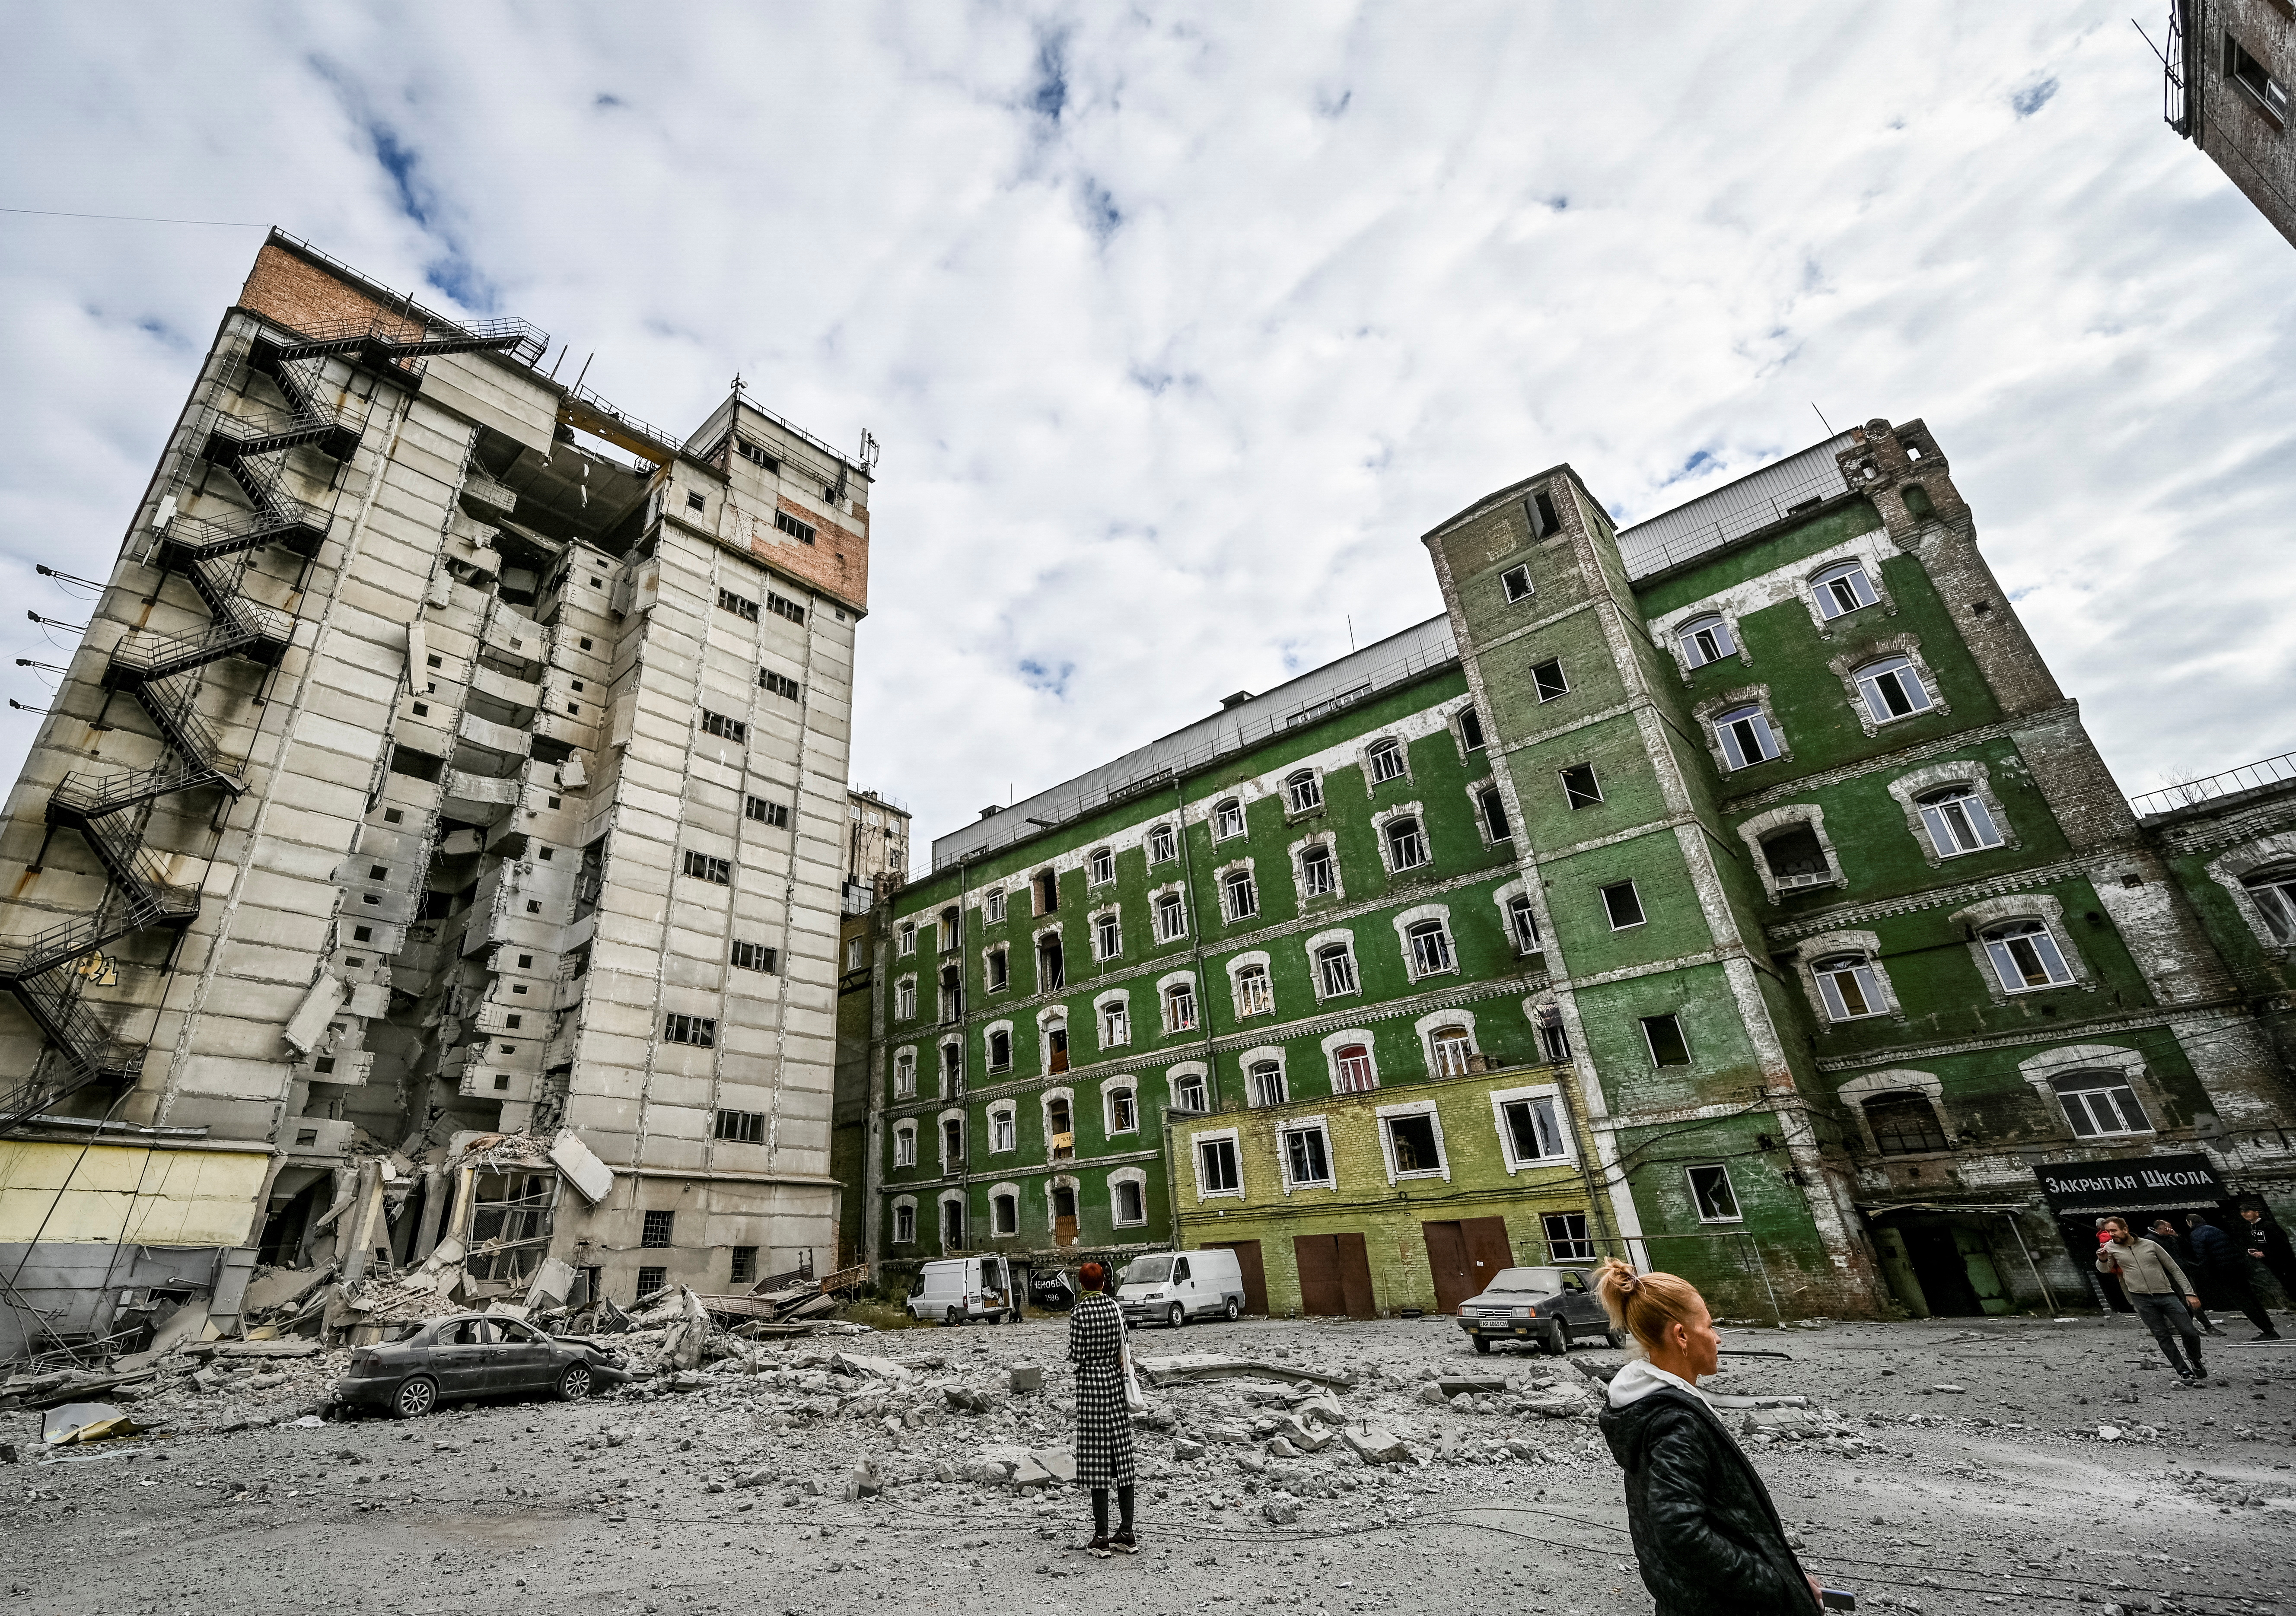 Una vista muestra los edificios de un antiguo molino, construido alrededor de 1885, y un molino soviético destruido durante un ataque de misiles rusos en Zaporizhzhia, Ucrania 14 de octubre de 2022. REUTERS/Stringer